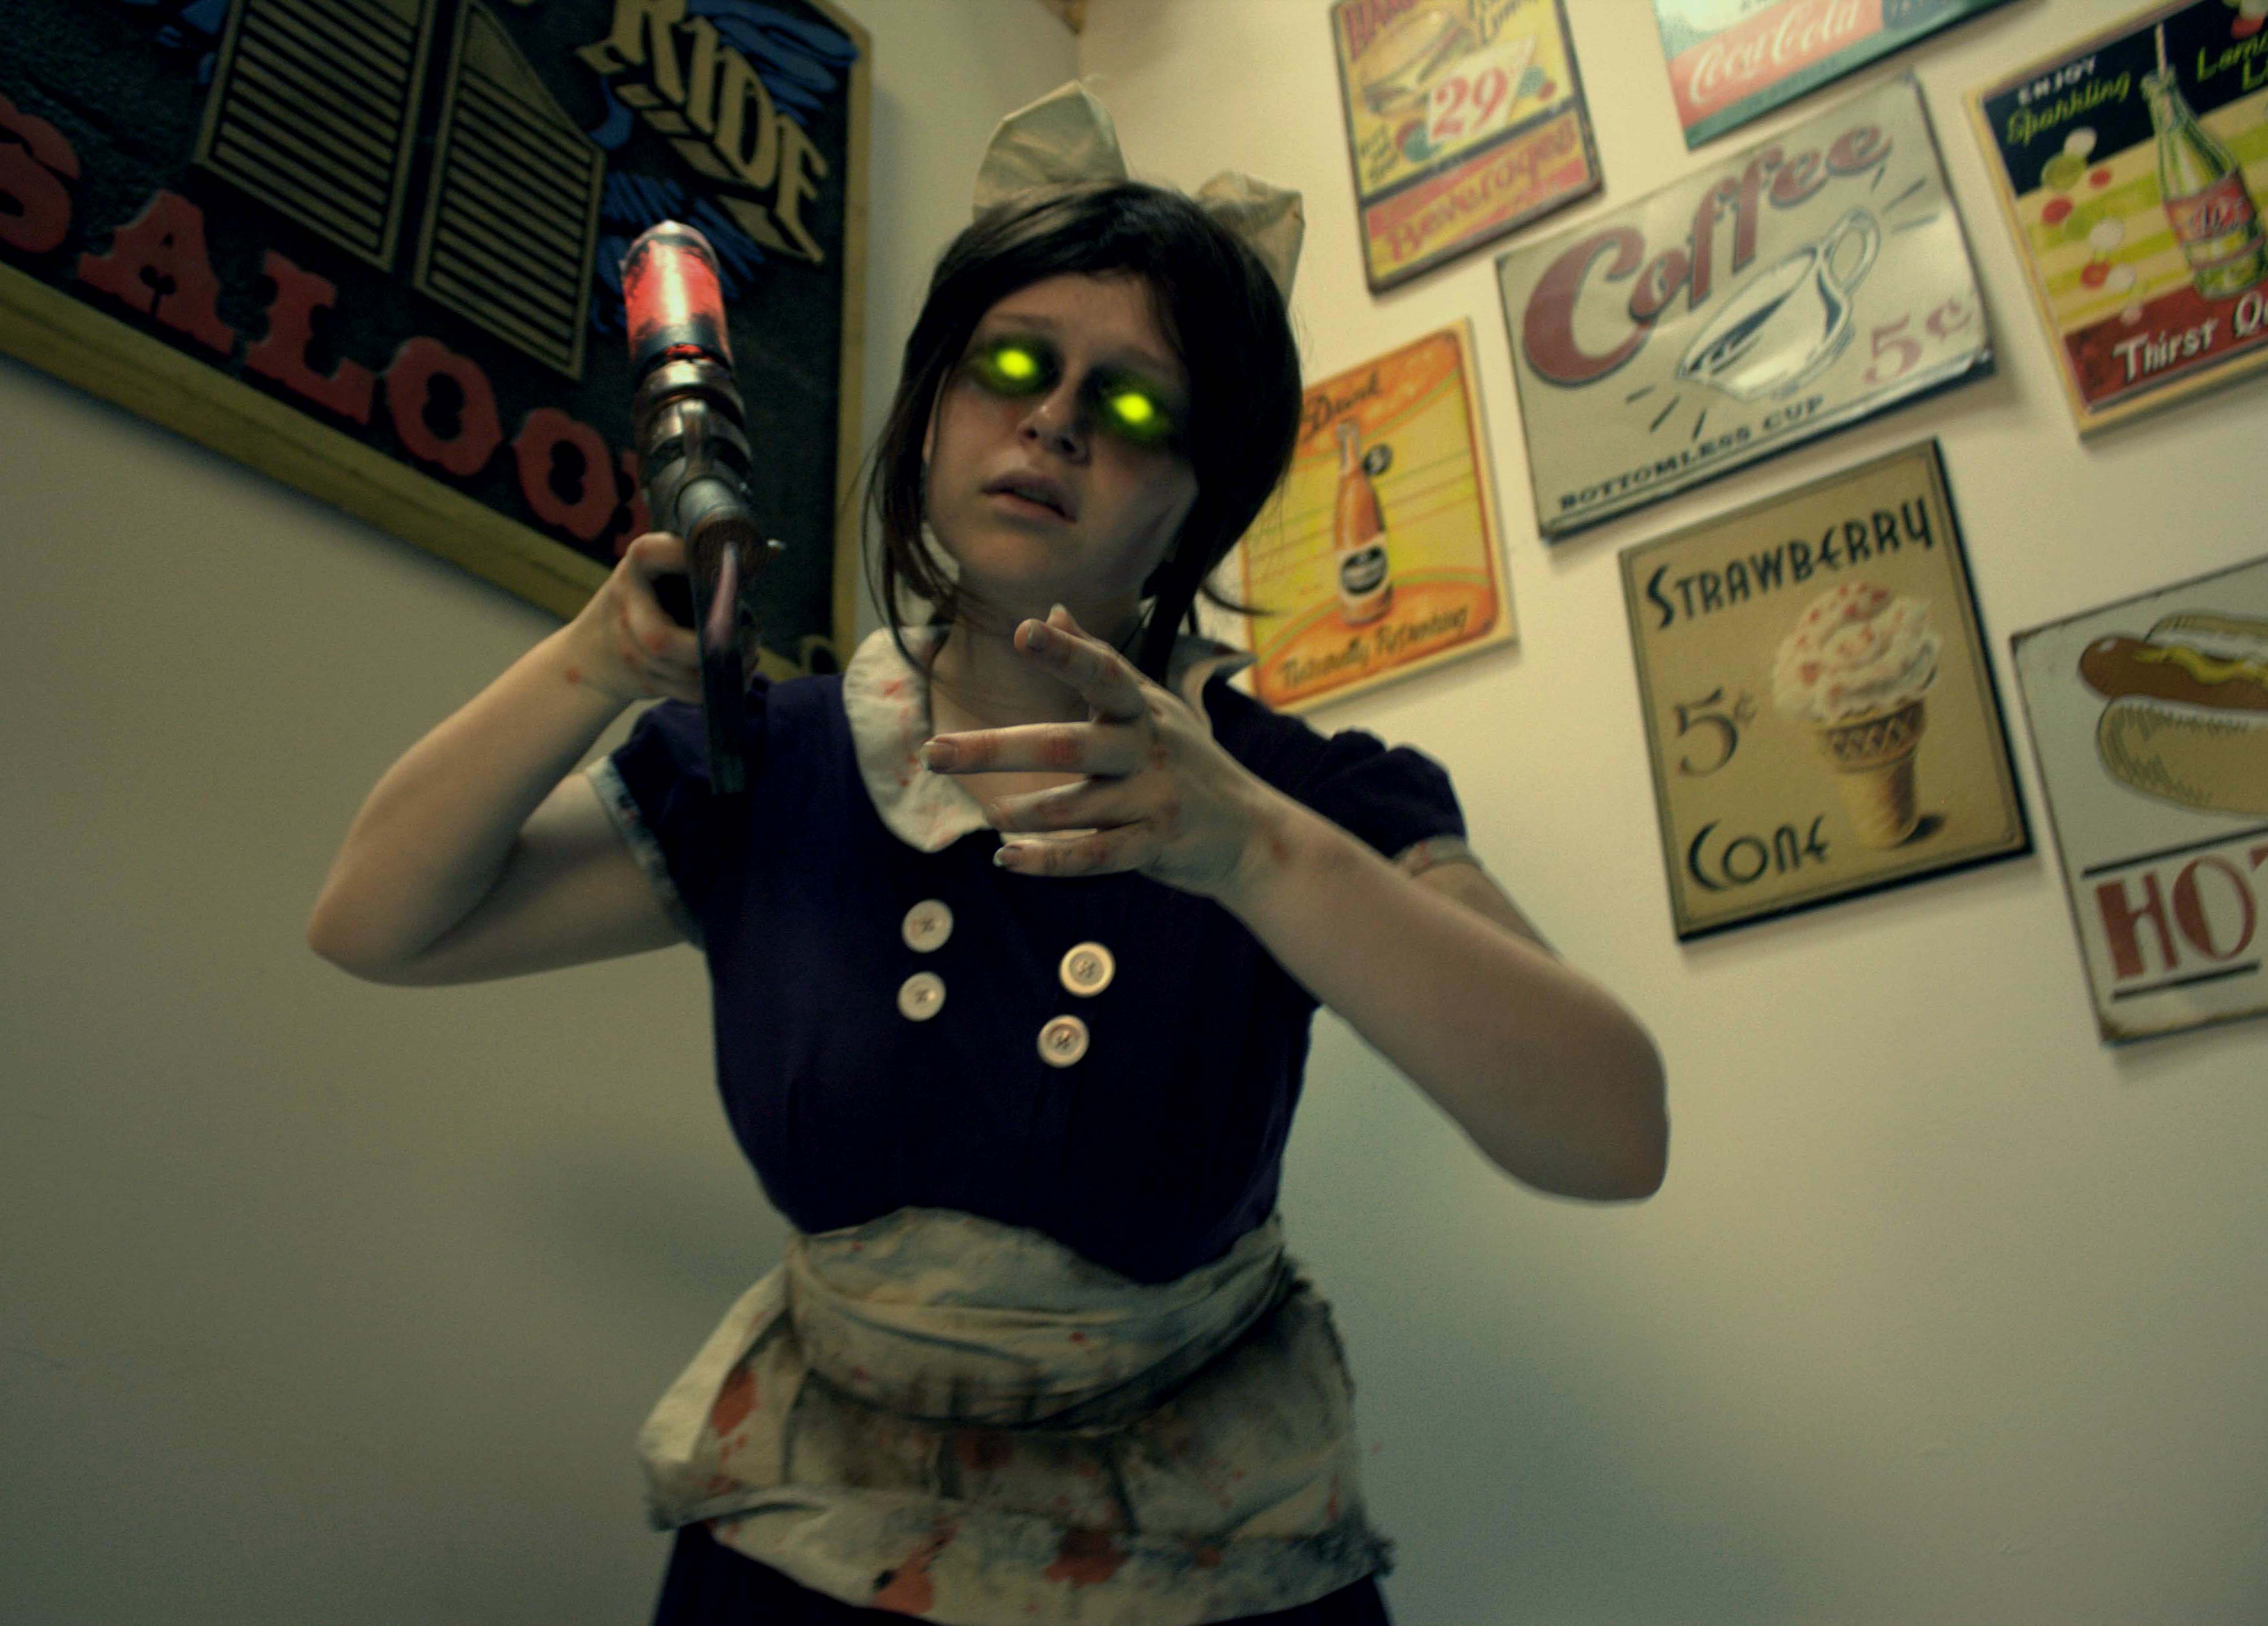 Little Sister (BioShock) cosplayed by Emma Rubini.